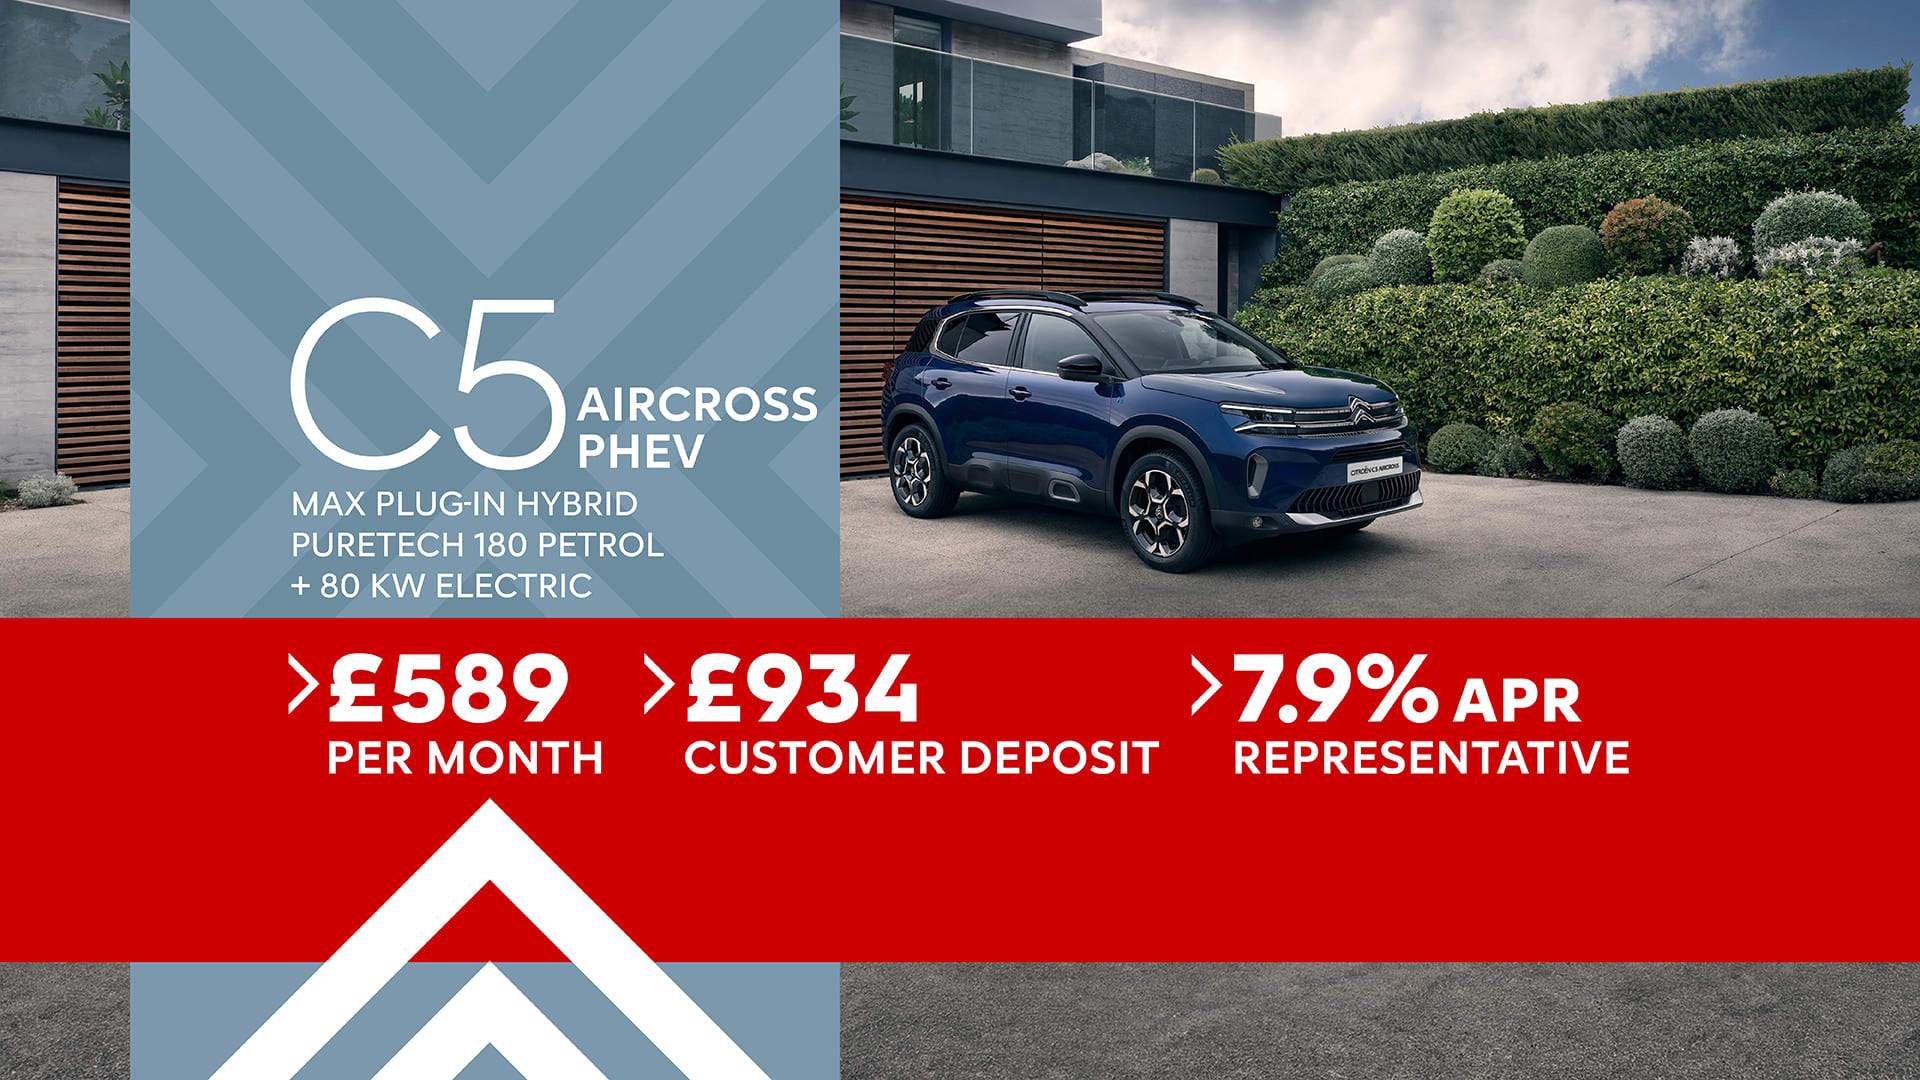 C5 Aircross PHEV Finance Offer